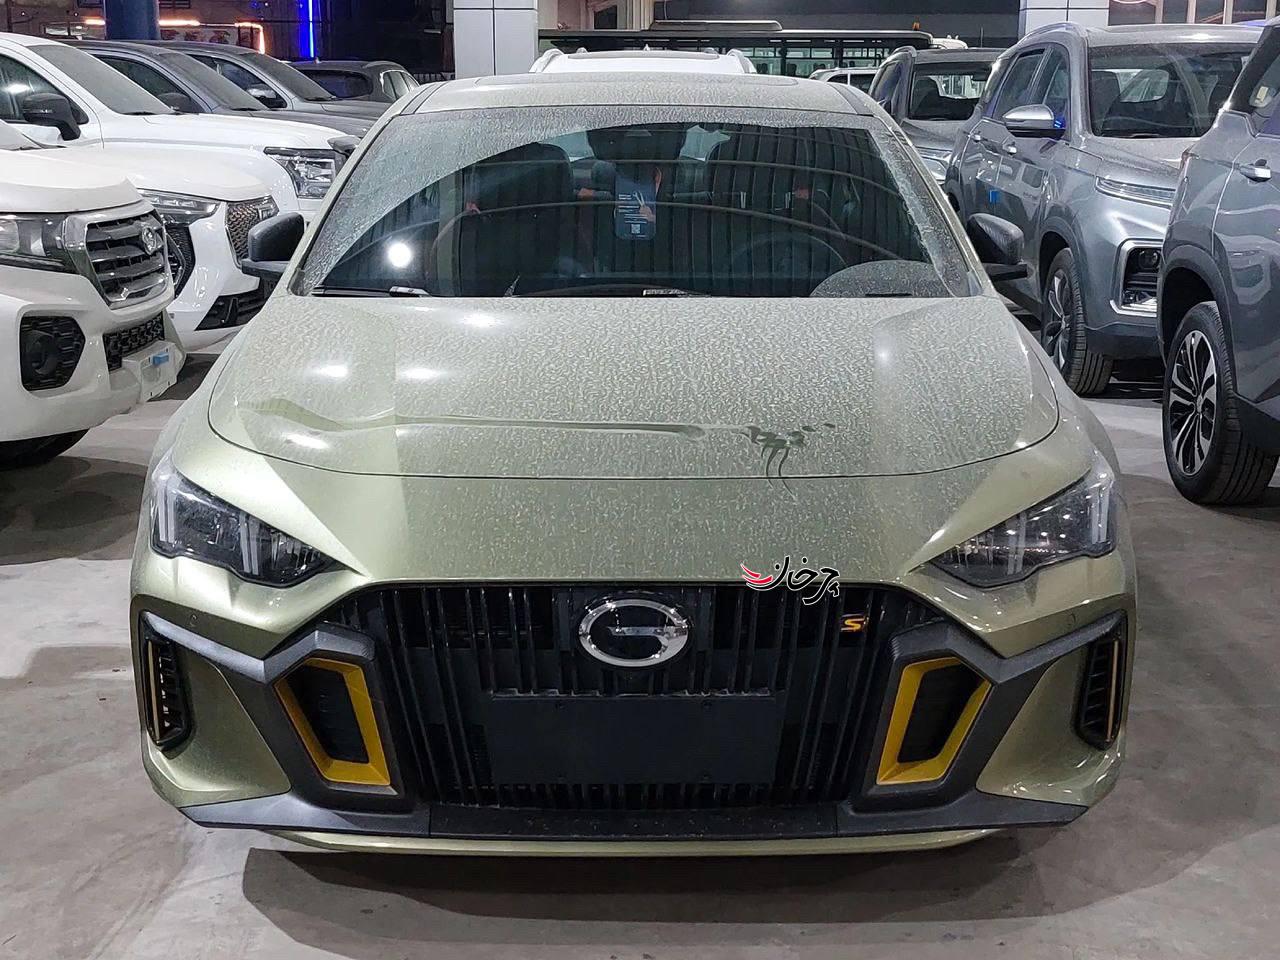 گک امپاو - GAC EMPOW خودرو وارداتی جدید بازار ایران